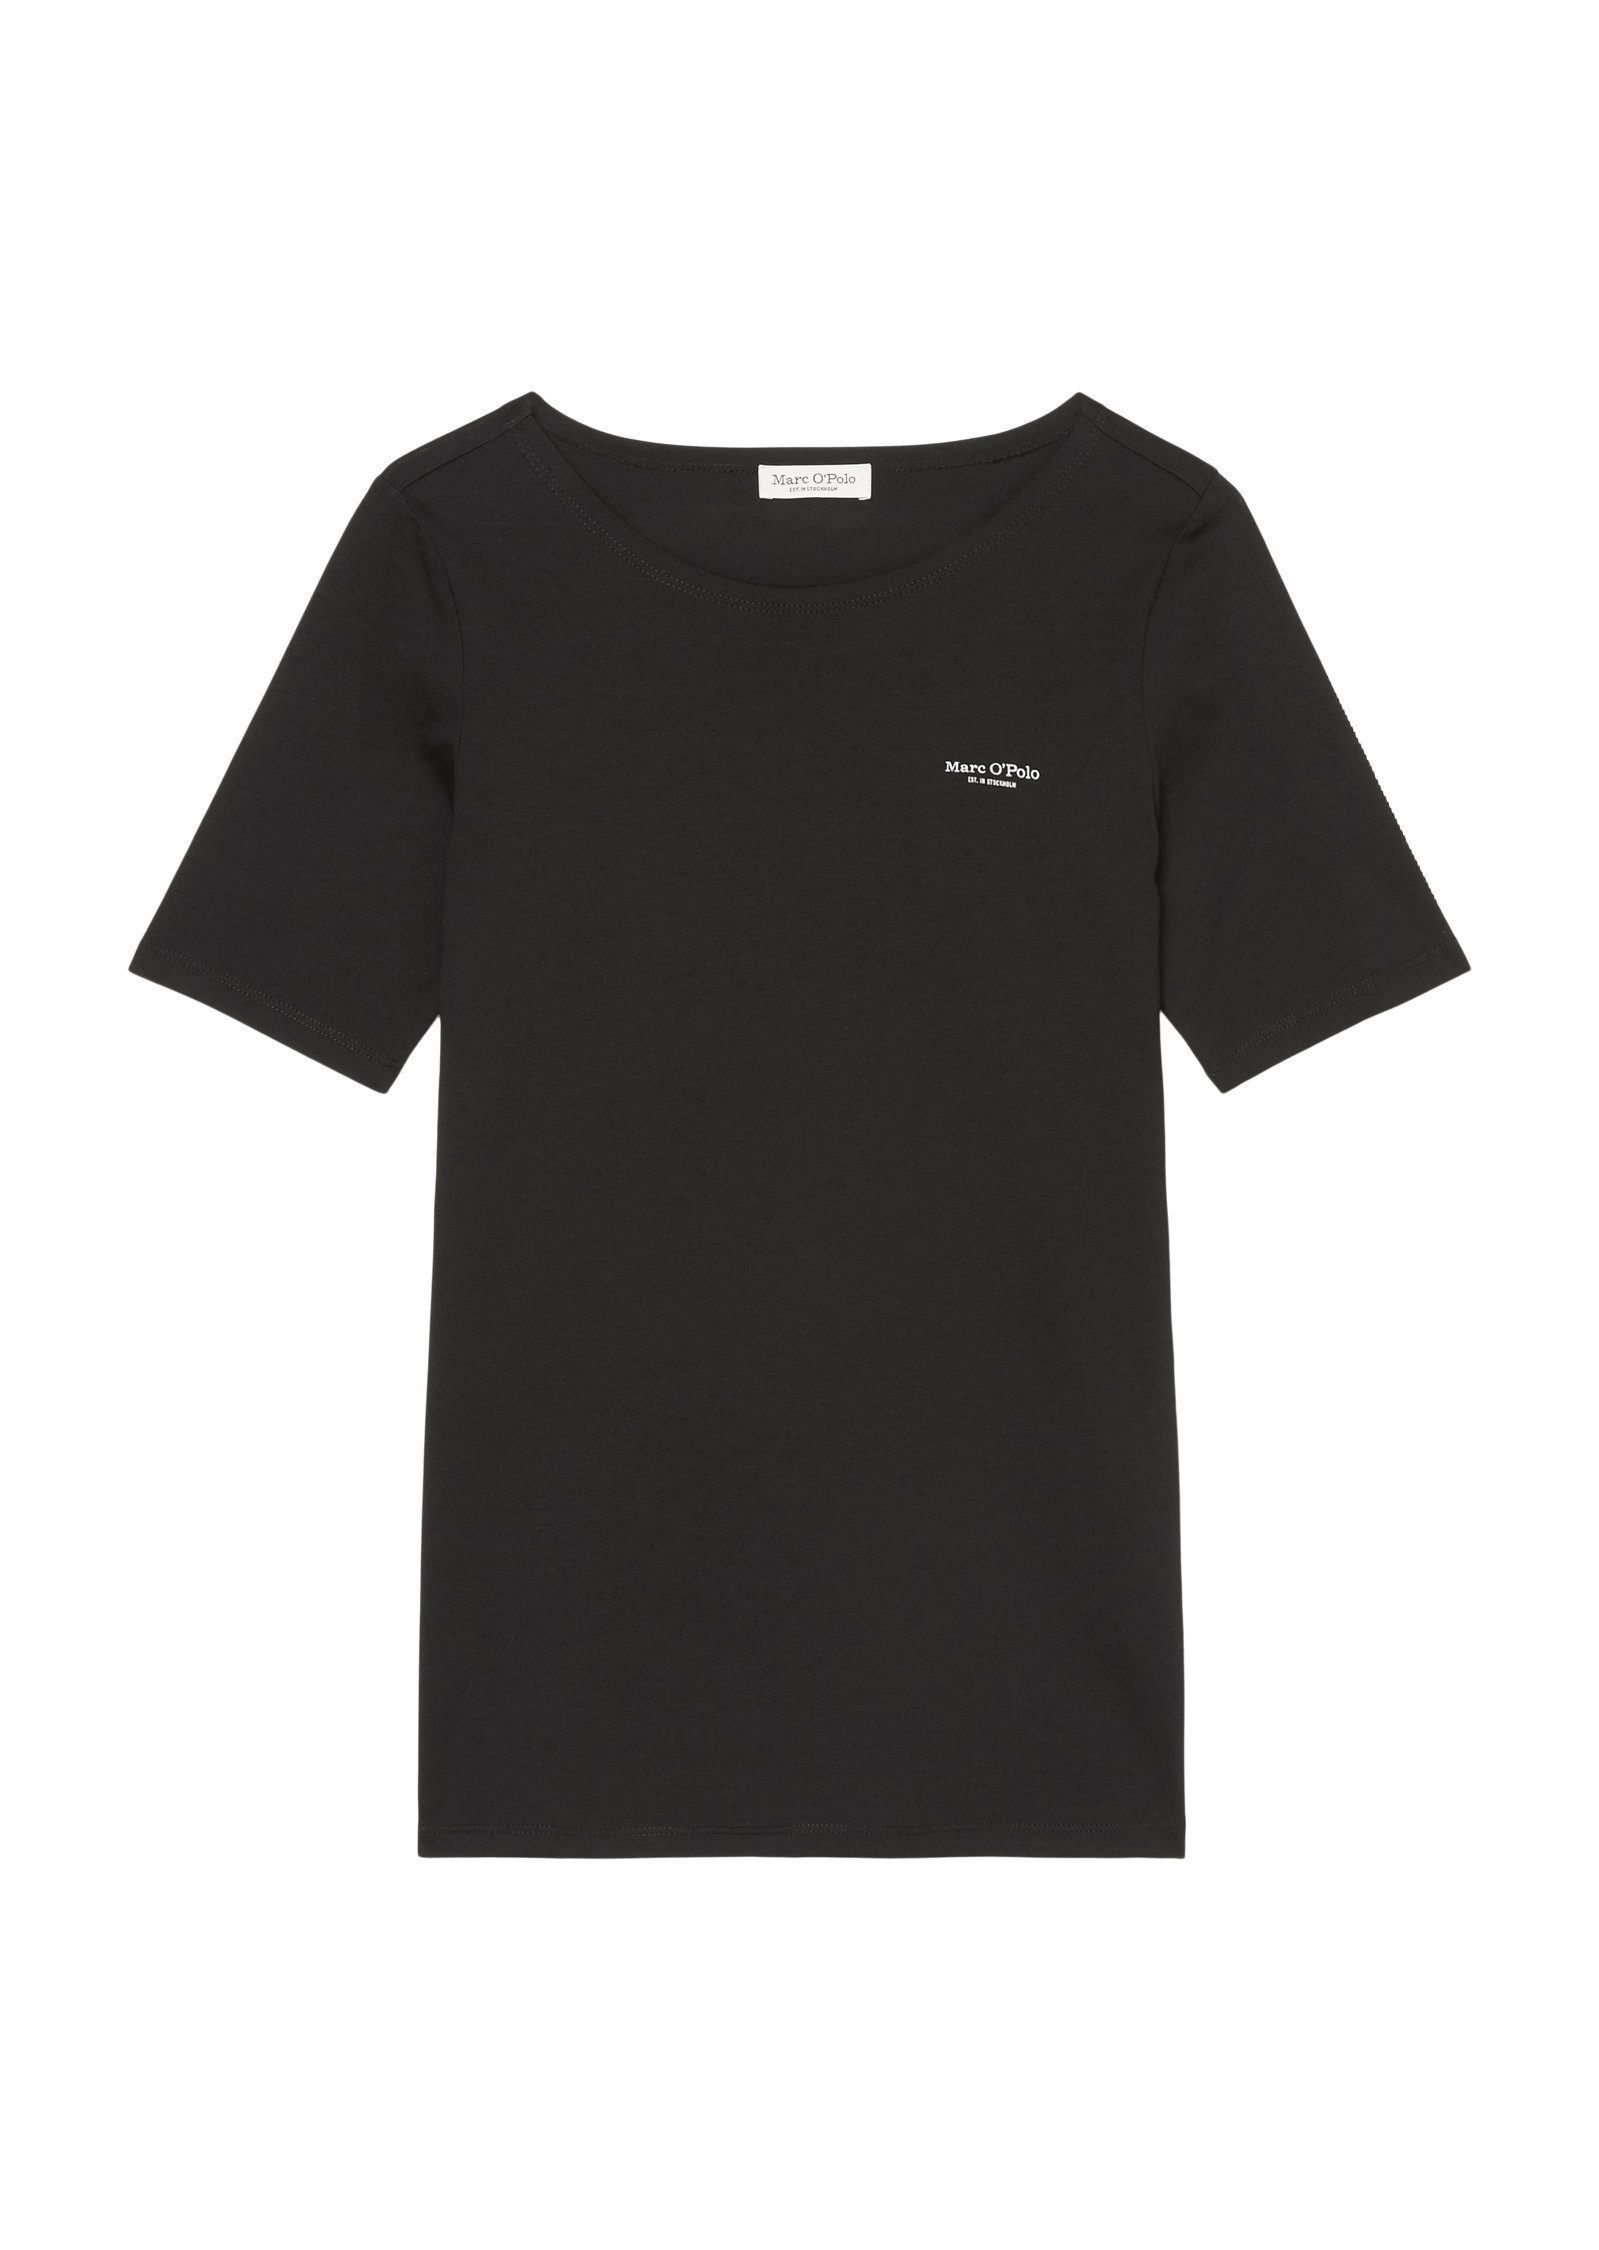 Marc O'Polo T-Shirt T-shirt, short-sleeve, Logo Brust auf black round neck, logo-print der mit kleinem